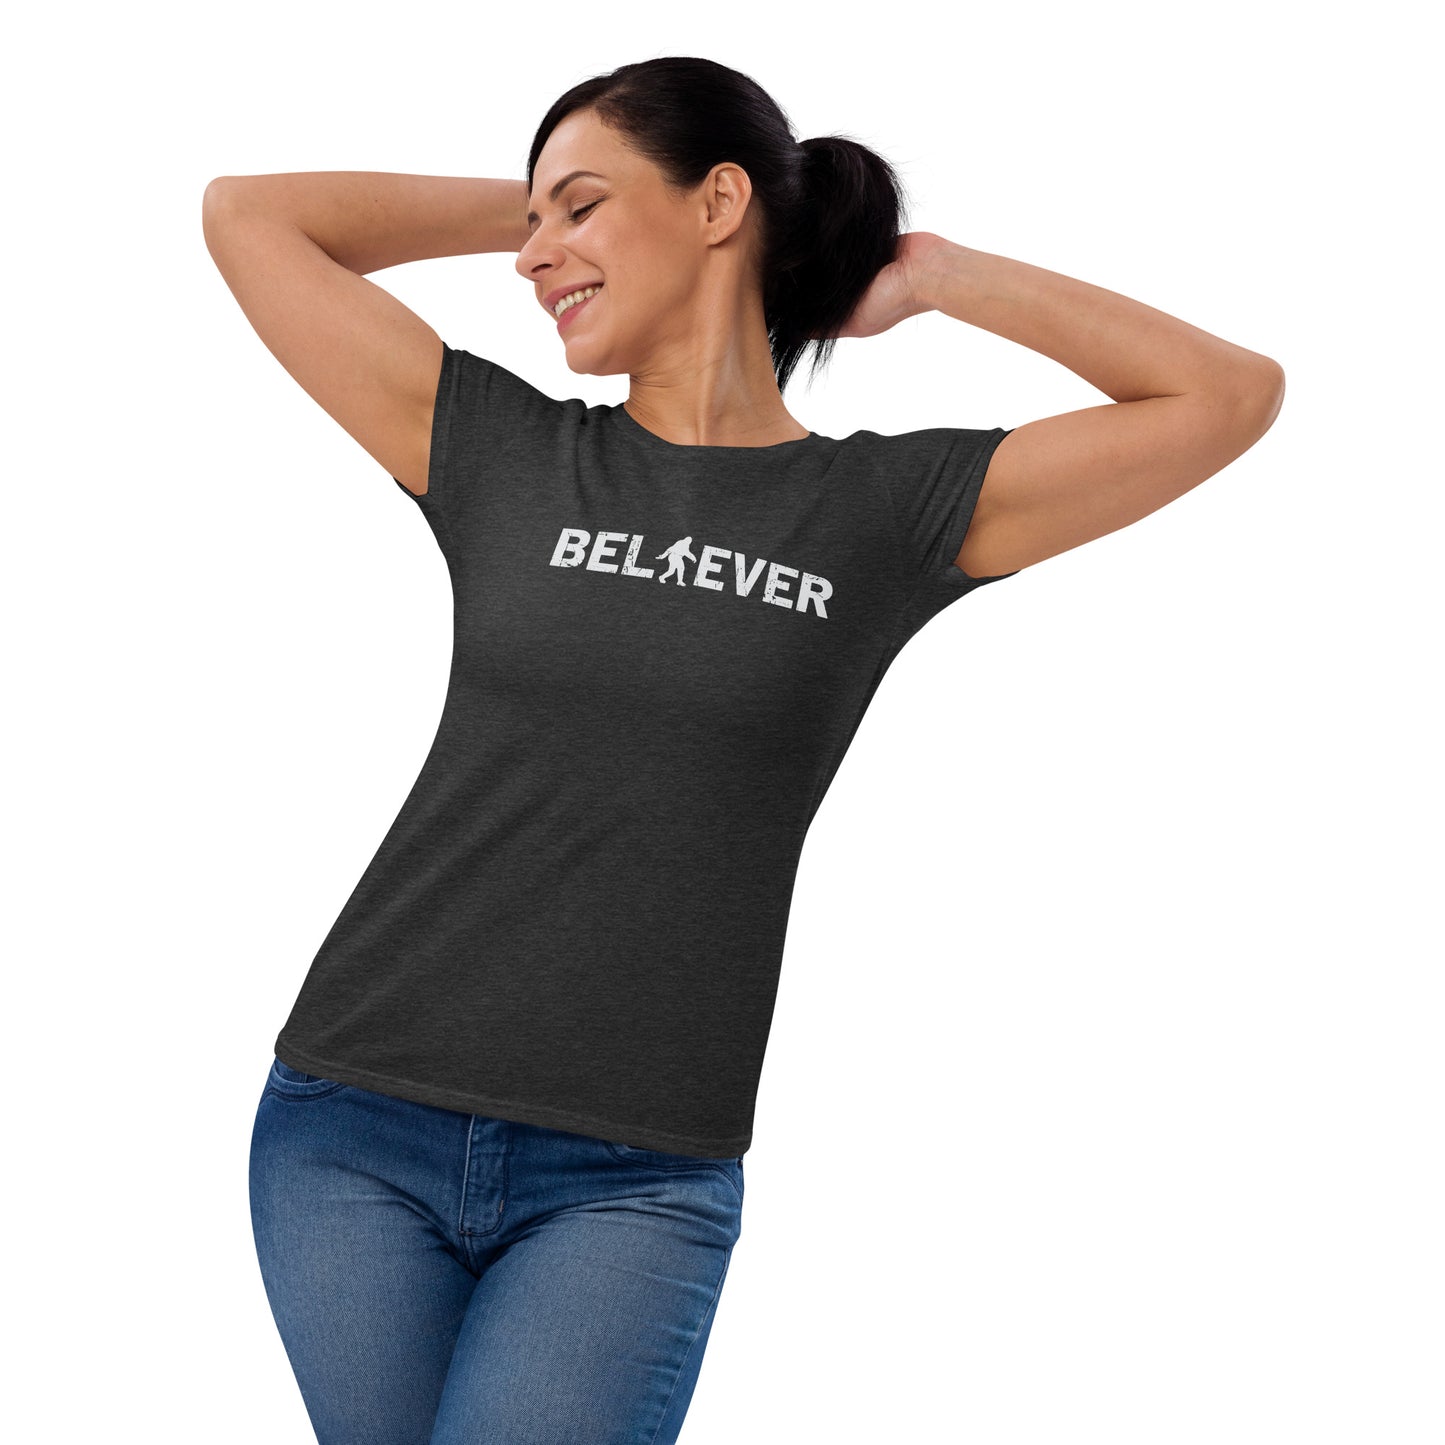 Women's Fashion Fit T-shirt - Bigfoot Believer